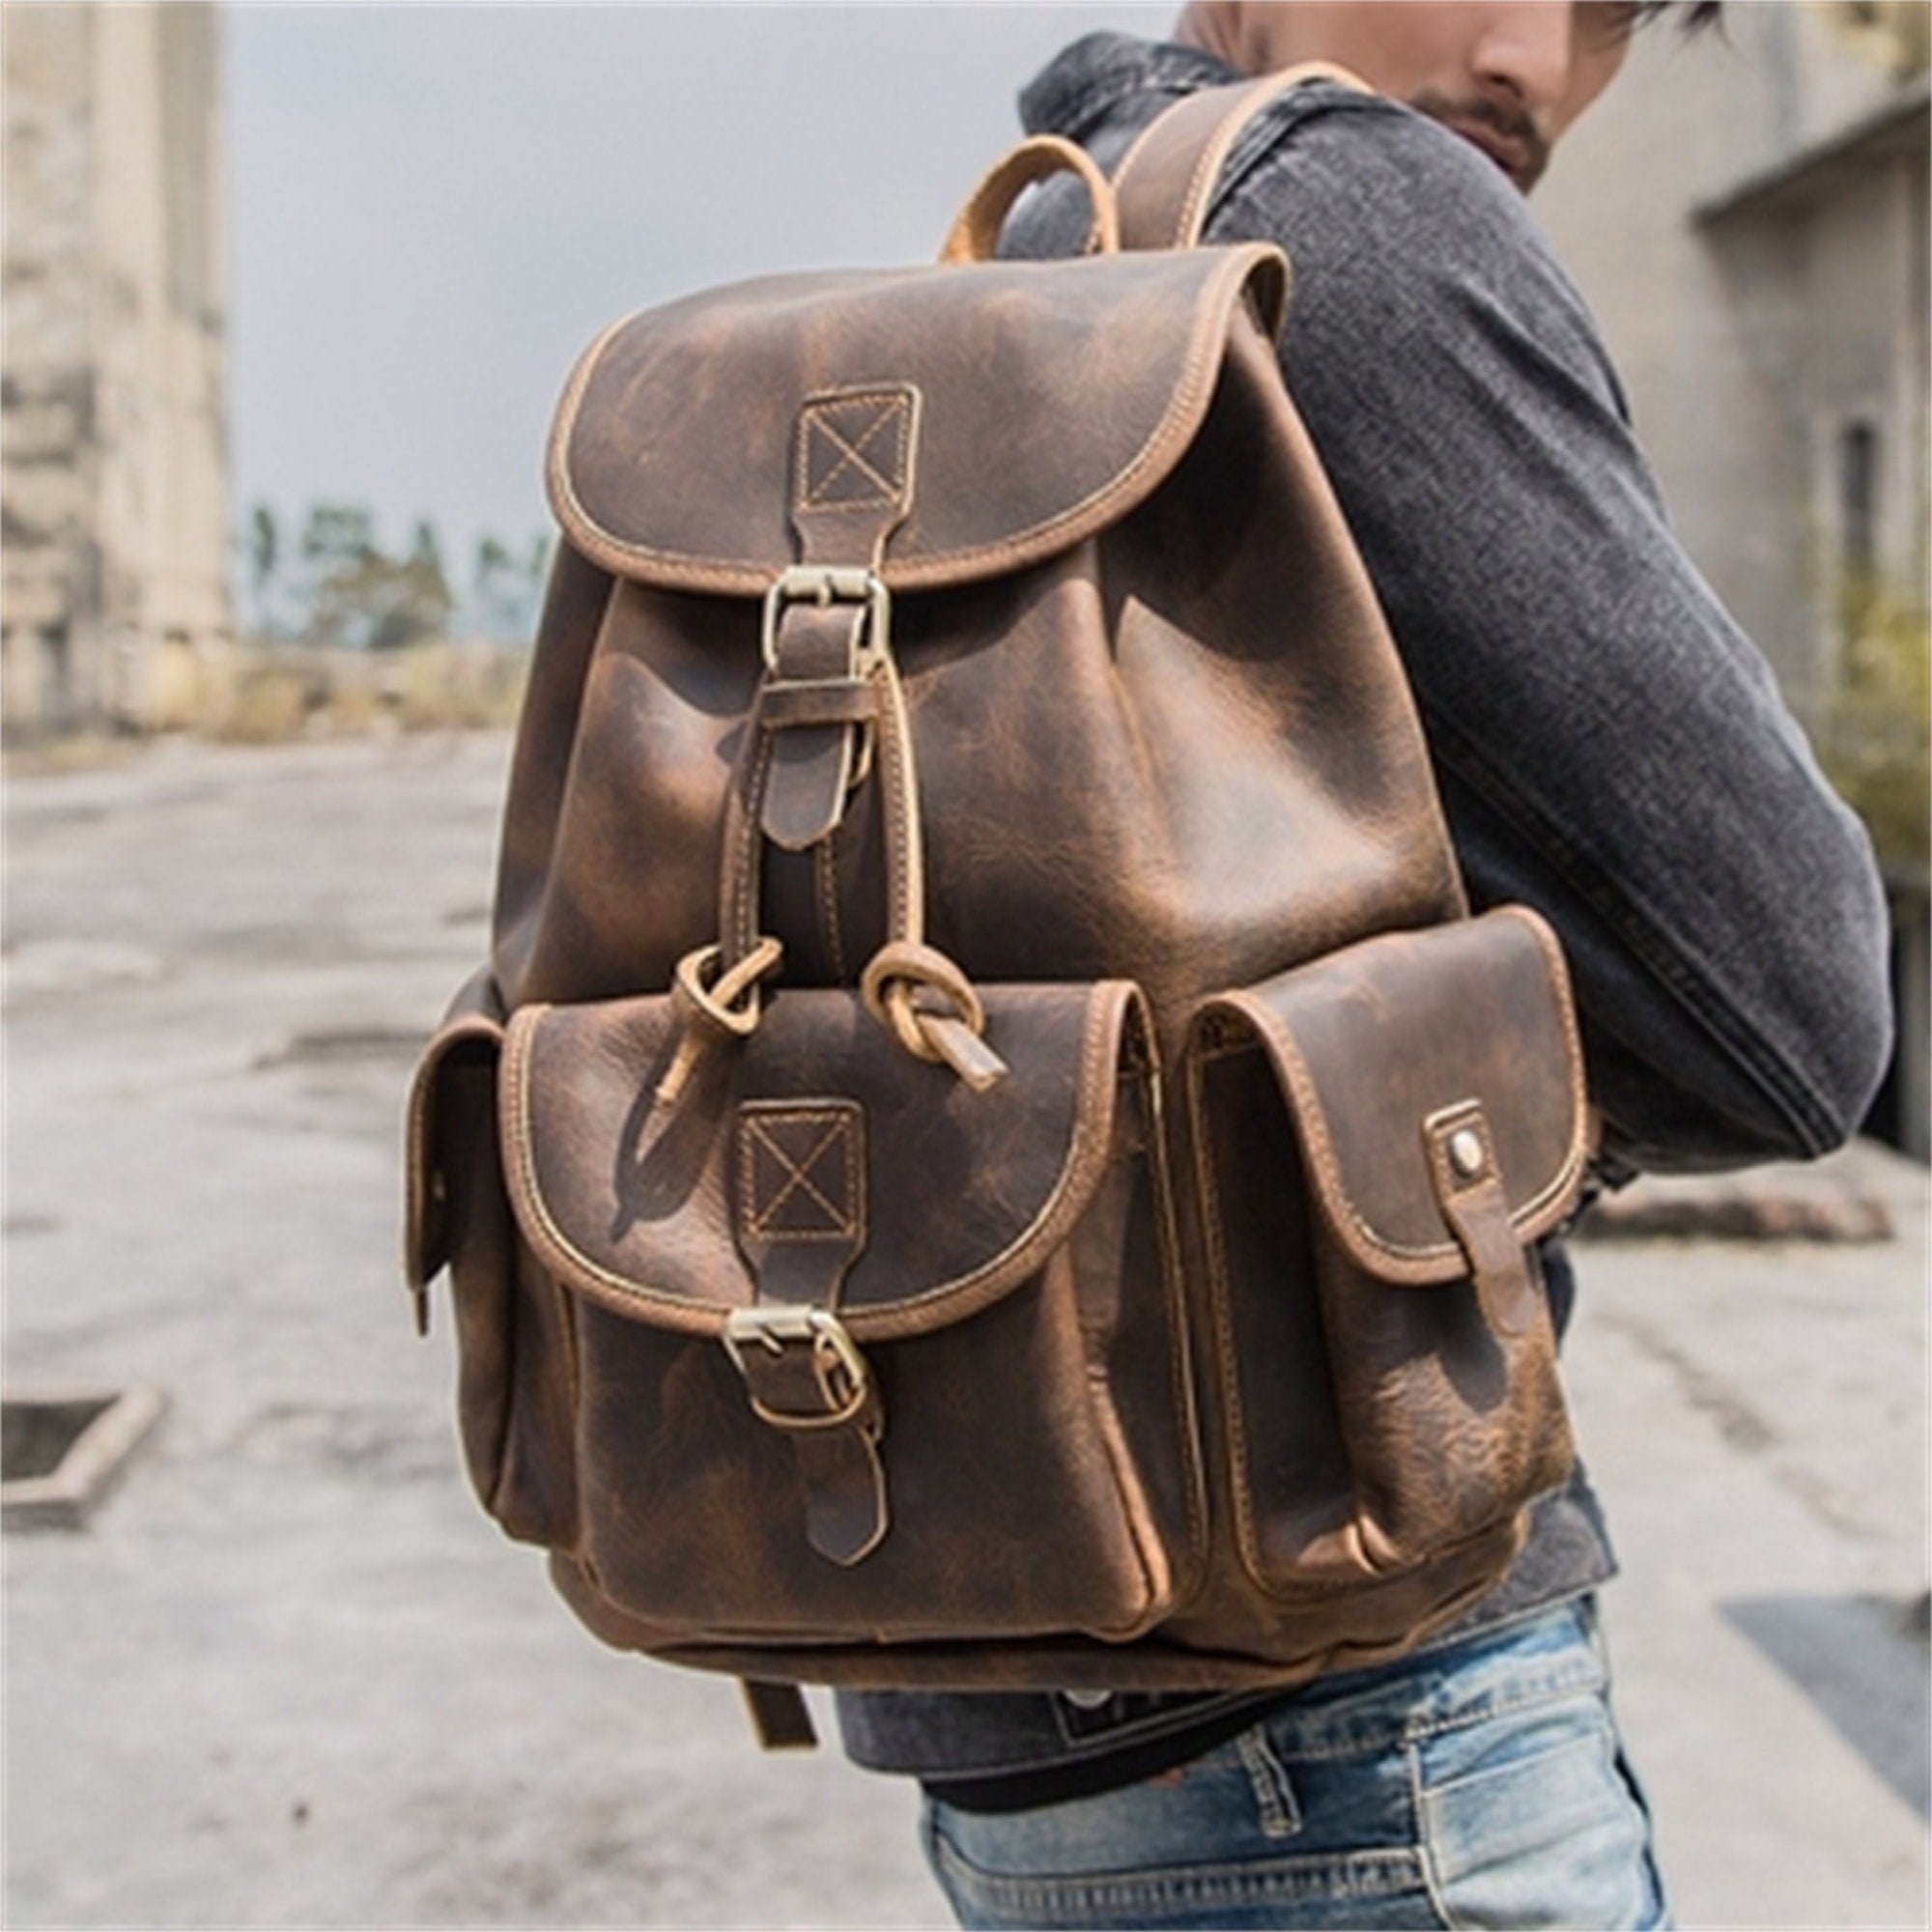 Vintage Leather Backpack for Women - Large Travel Bag, Outdoor Bag for Men - Gift for Him